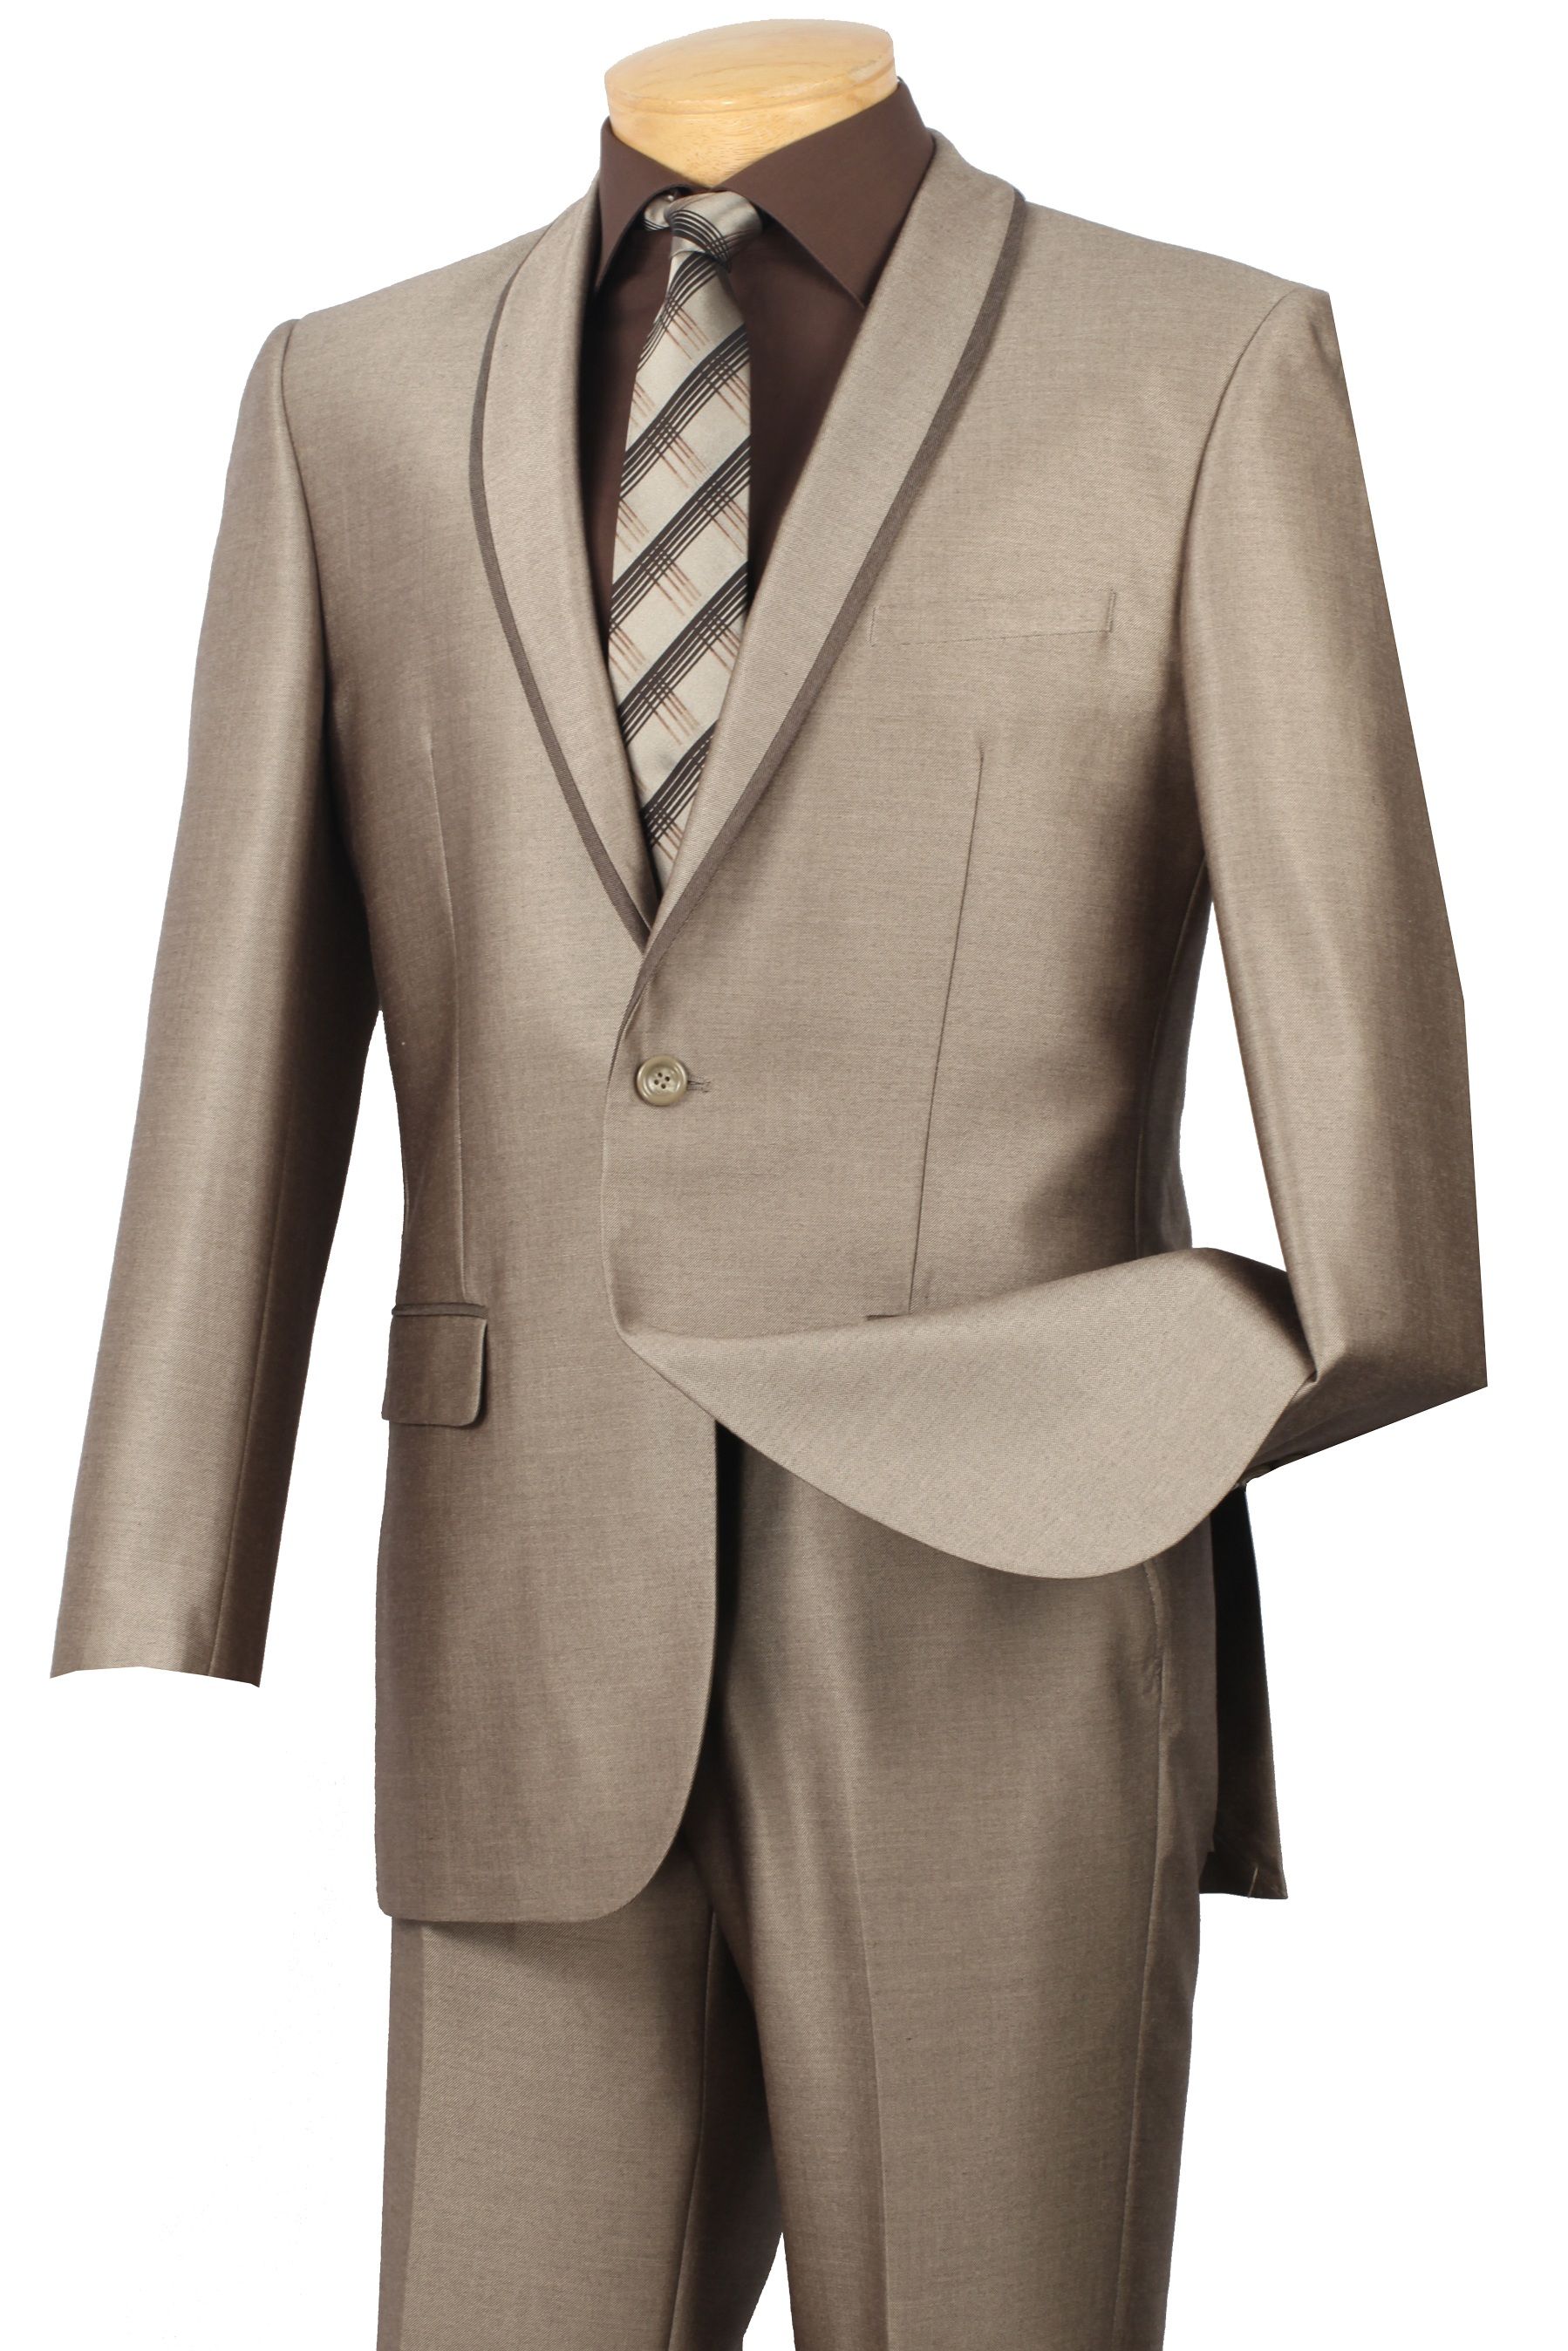 VINCI Men's Black Sharkskin 2 Button Shawl Lapel Slim Fit Tuxedo Suit NEW 